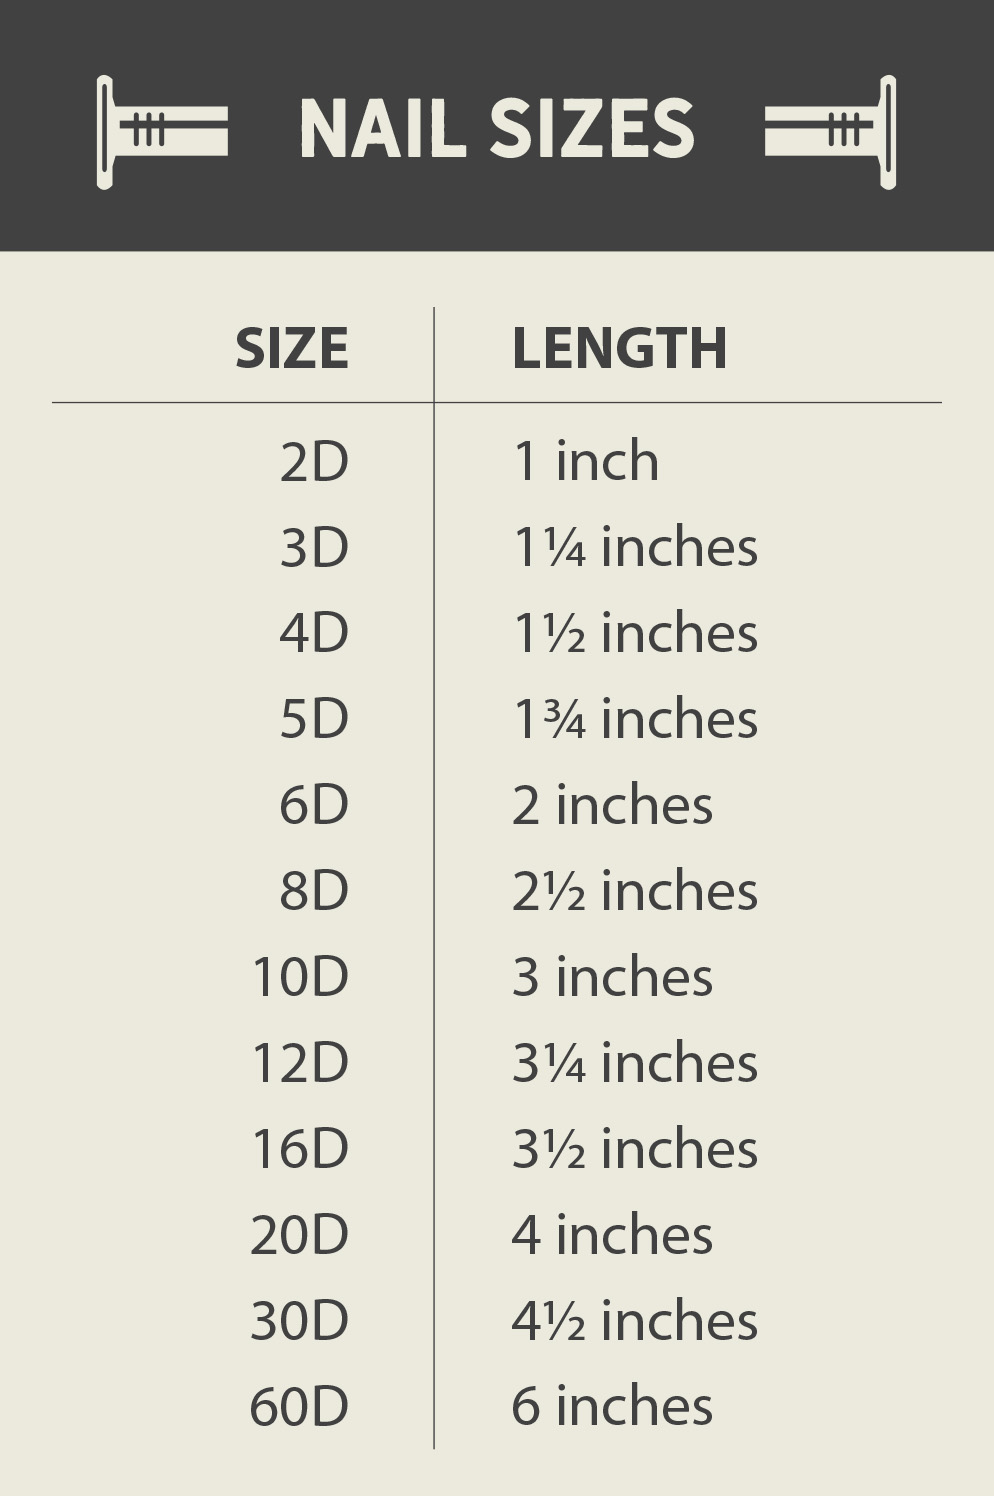 nail sizes